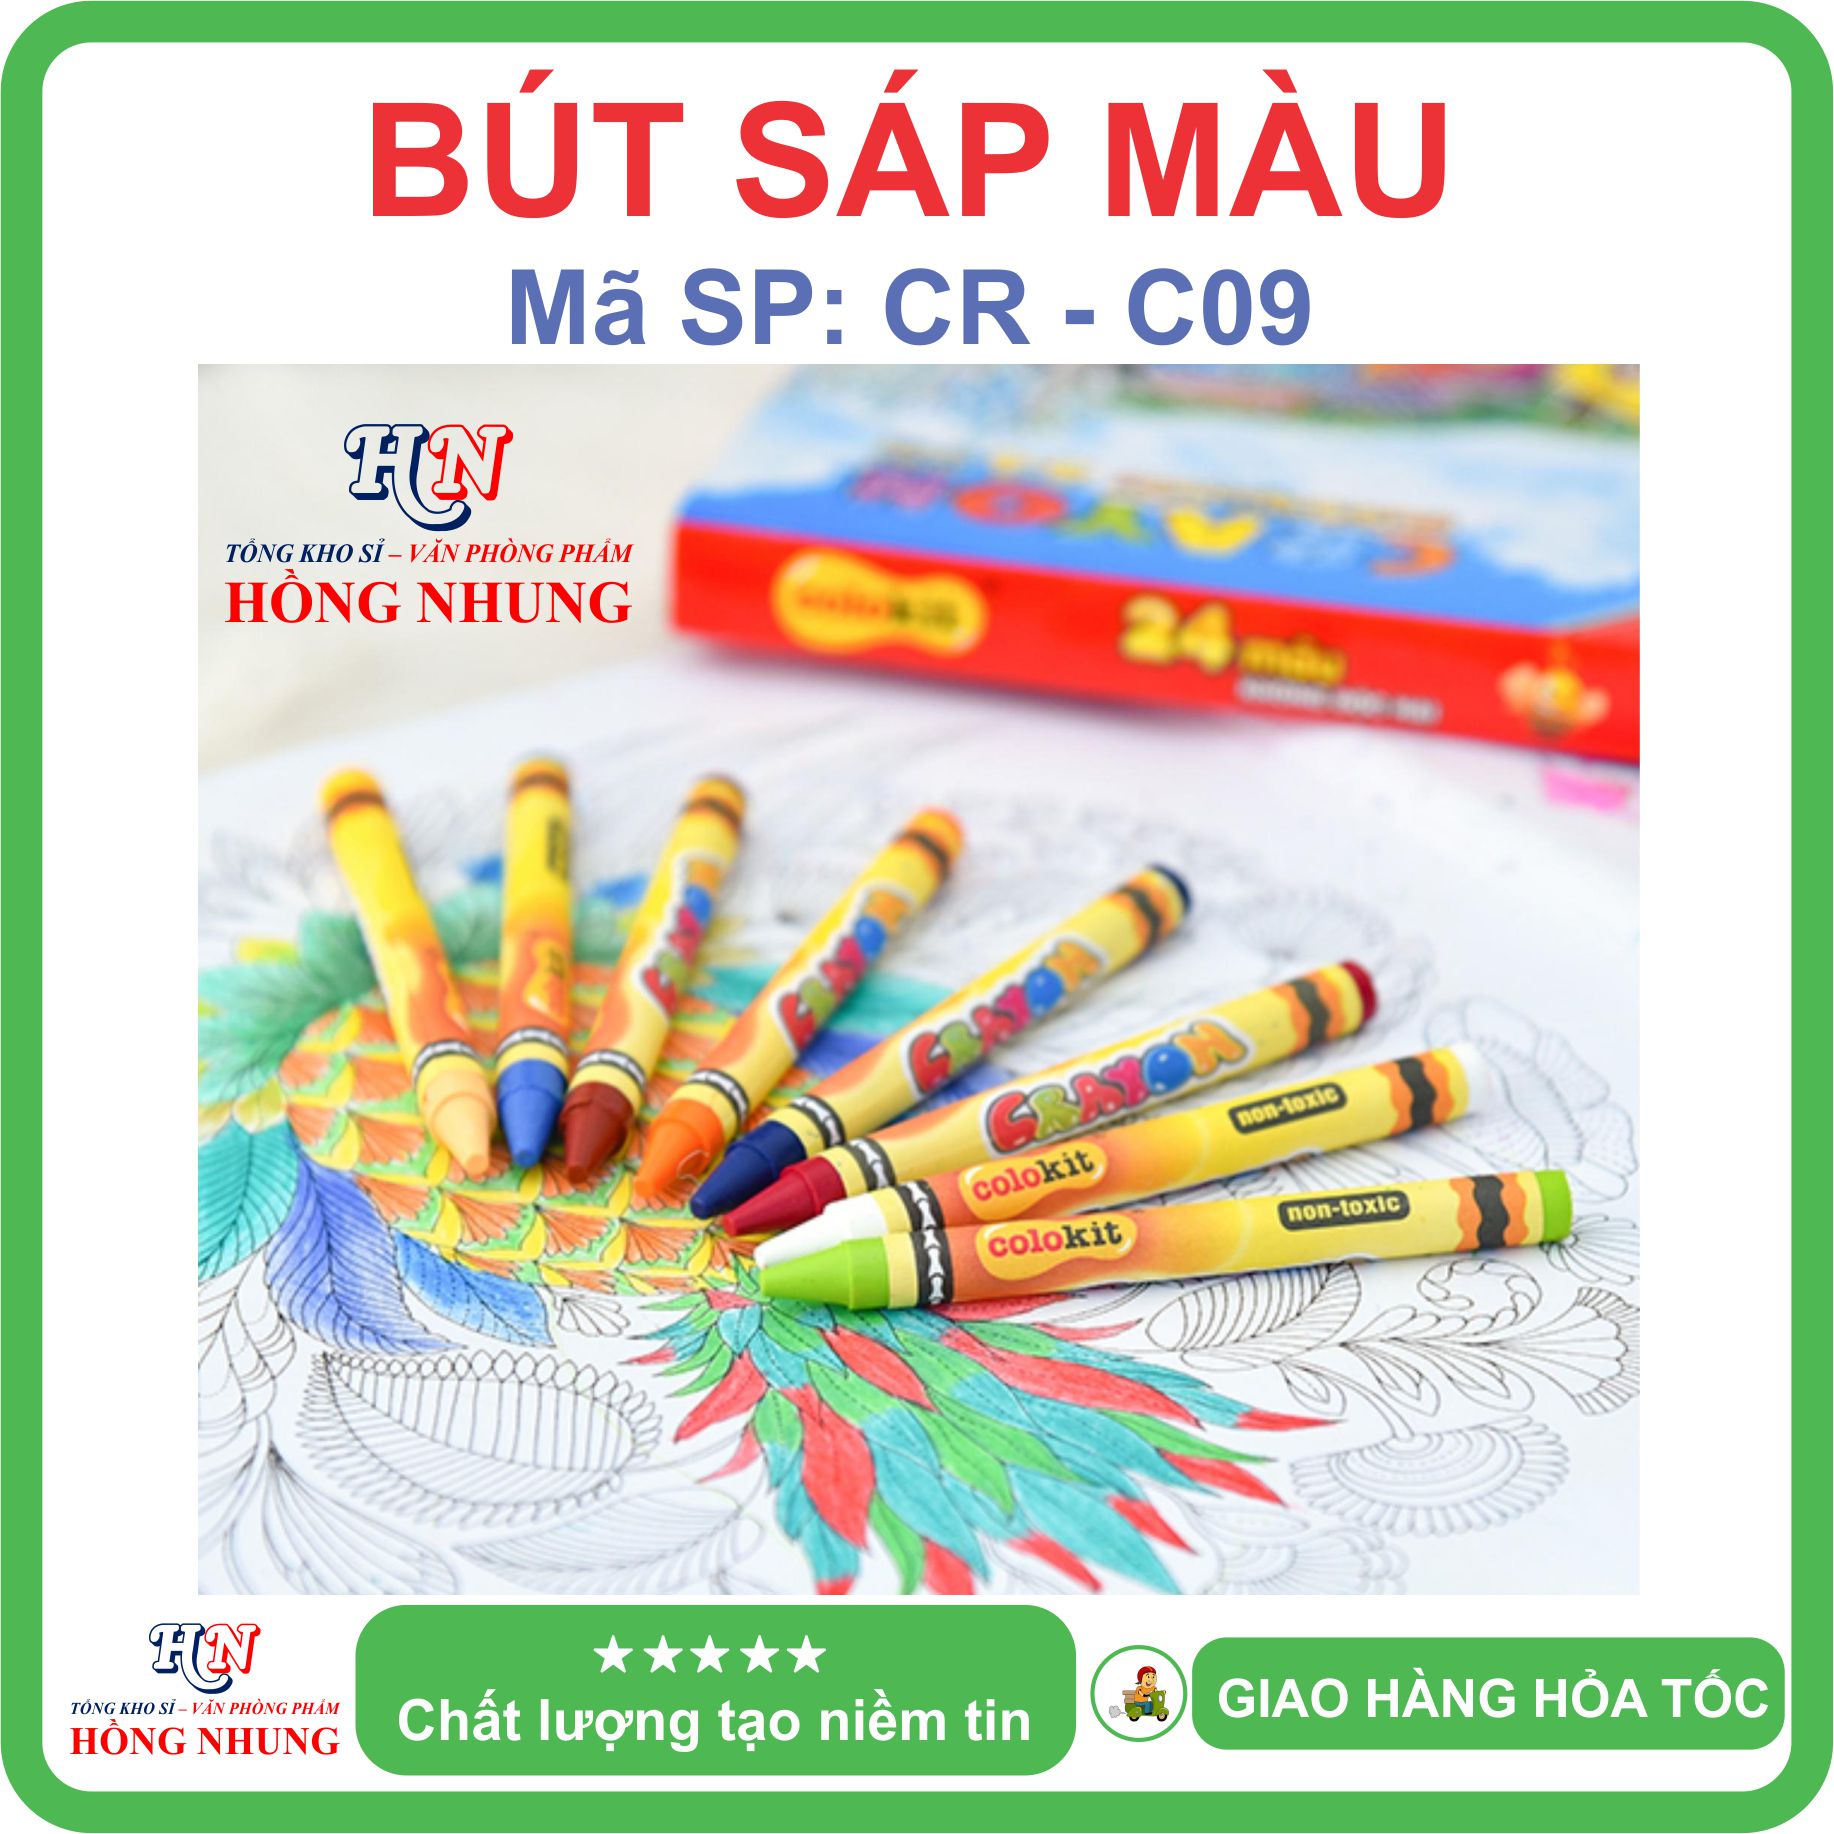 [SALE] Hộp 24 Bút sáp màu Colokit CR-C09, màu mịn, dễ thương, an toàn cho trẻ em.